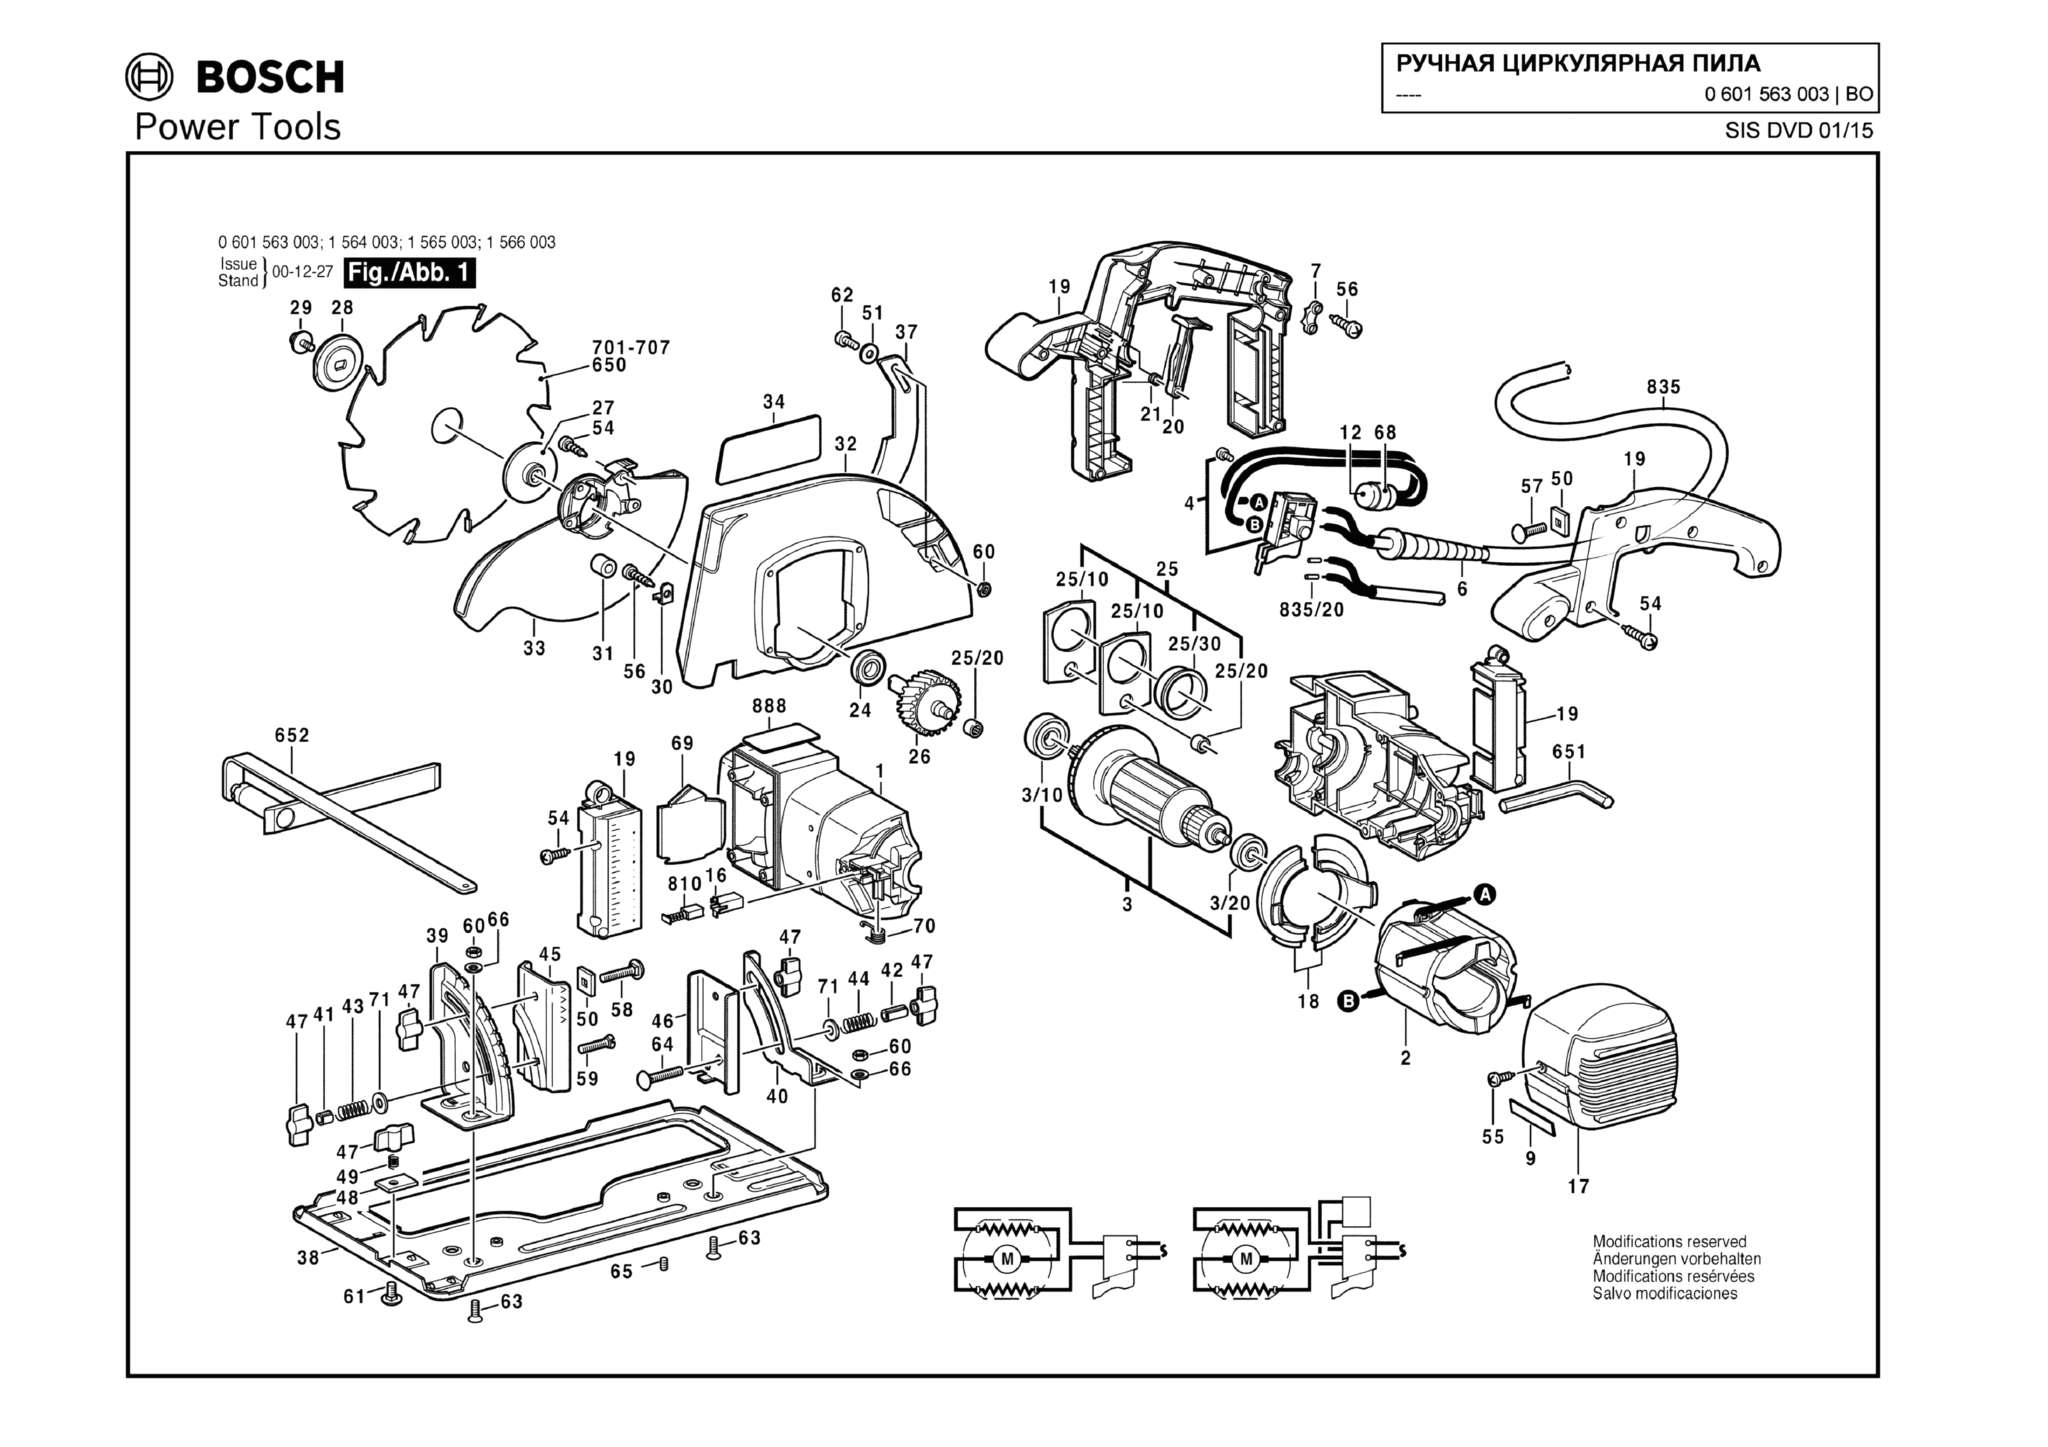 Запчасти, схема и деталировка Bosch (ТИП 0601563003)